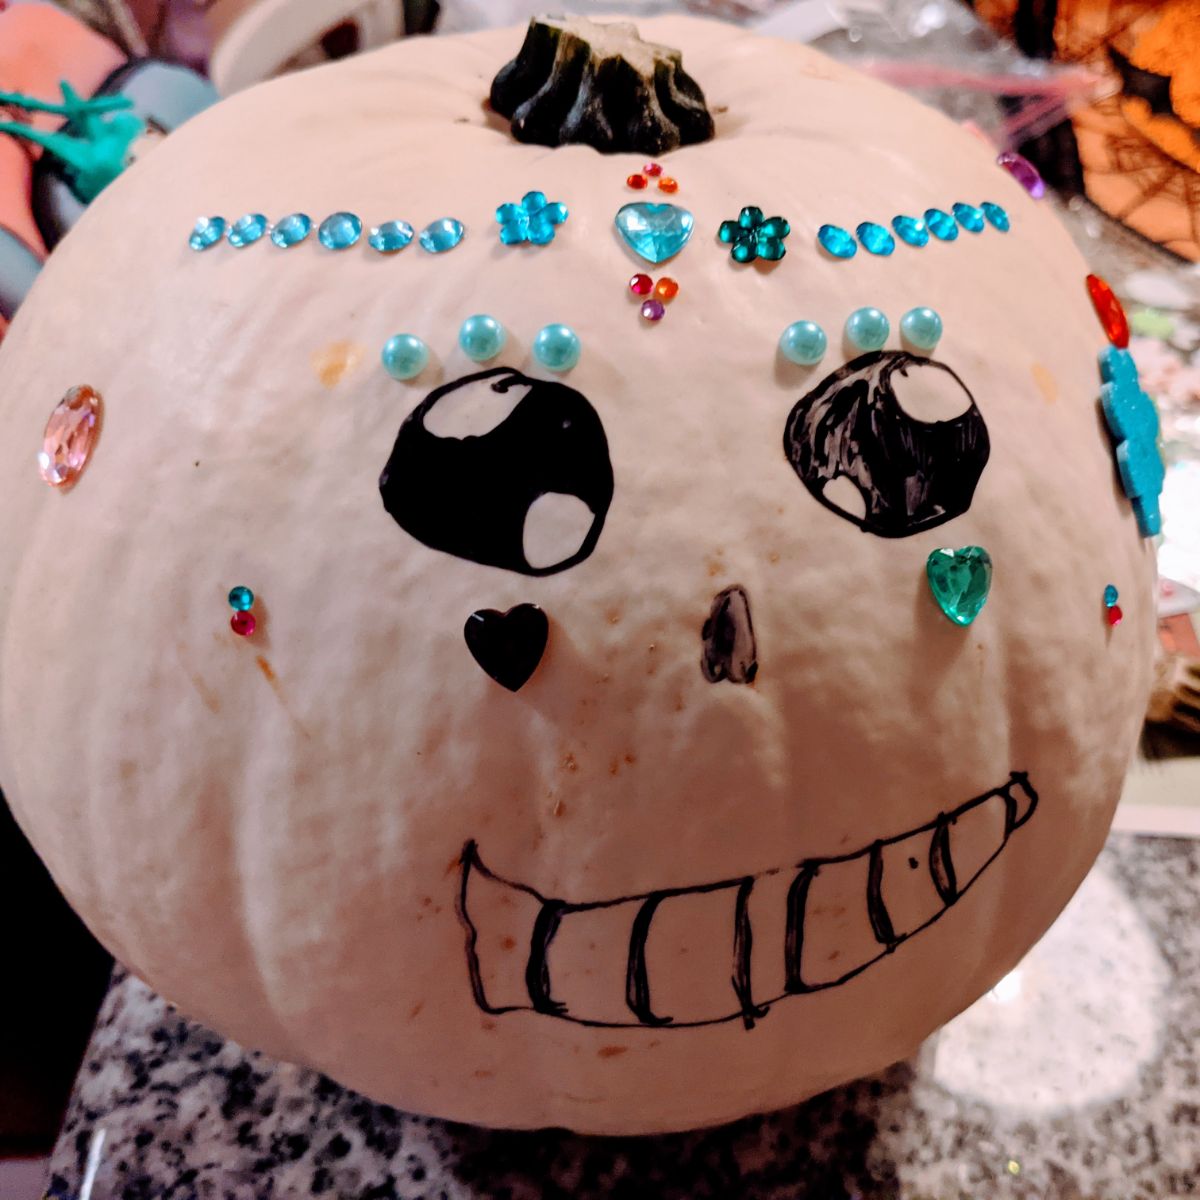 Smiling hand-drawn sugar skull pumpkin with rhinestone gems